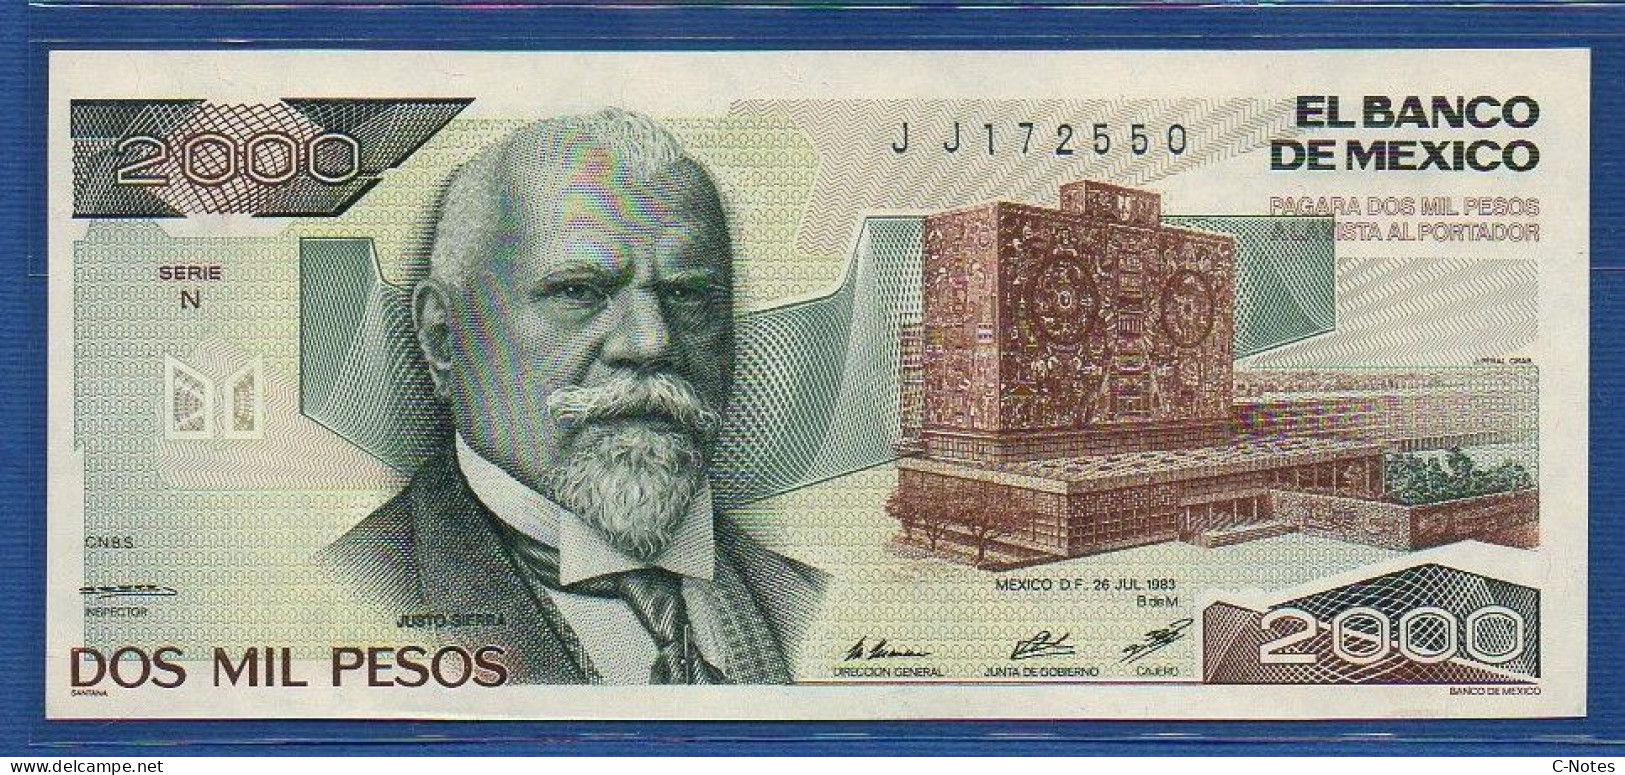 MEXICO - P. 82a – 2000 Pesos 1983 UNC, S/n N JJ172550 - Mexico